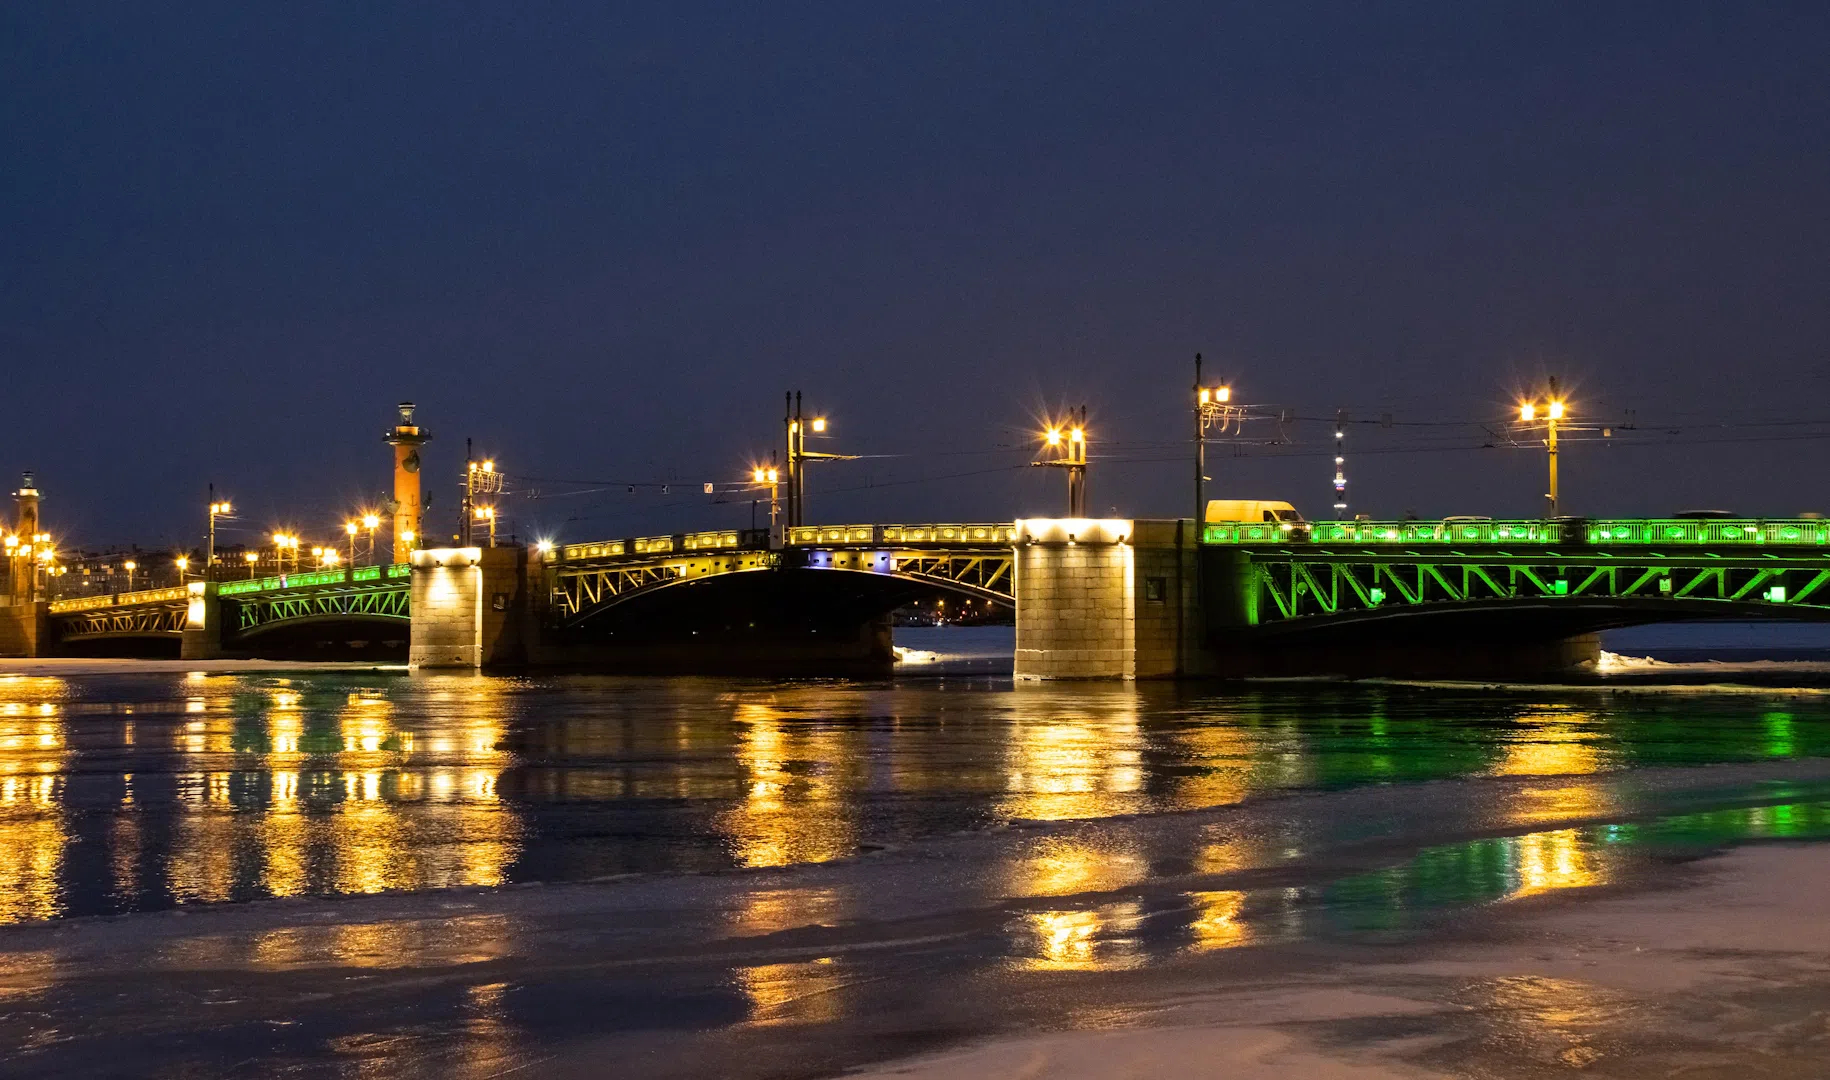 фото мостов санкт петербурга с описанием